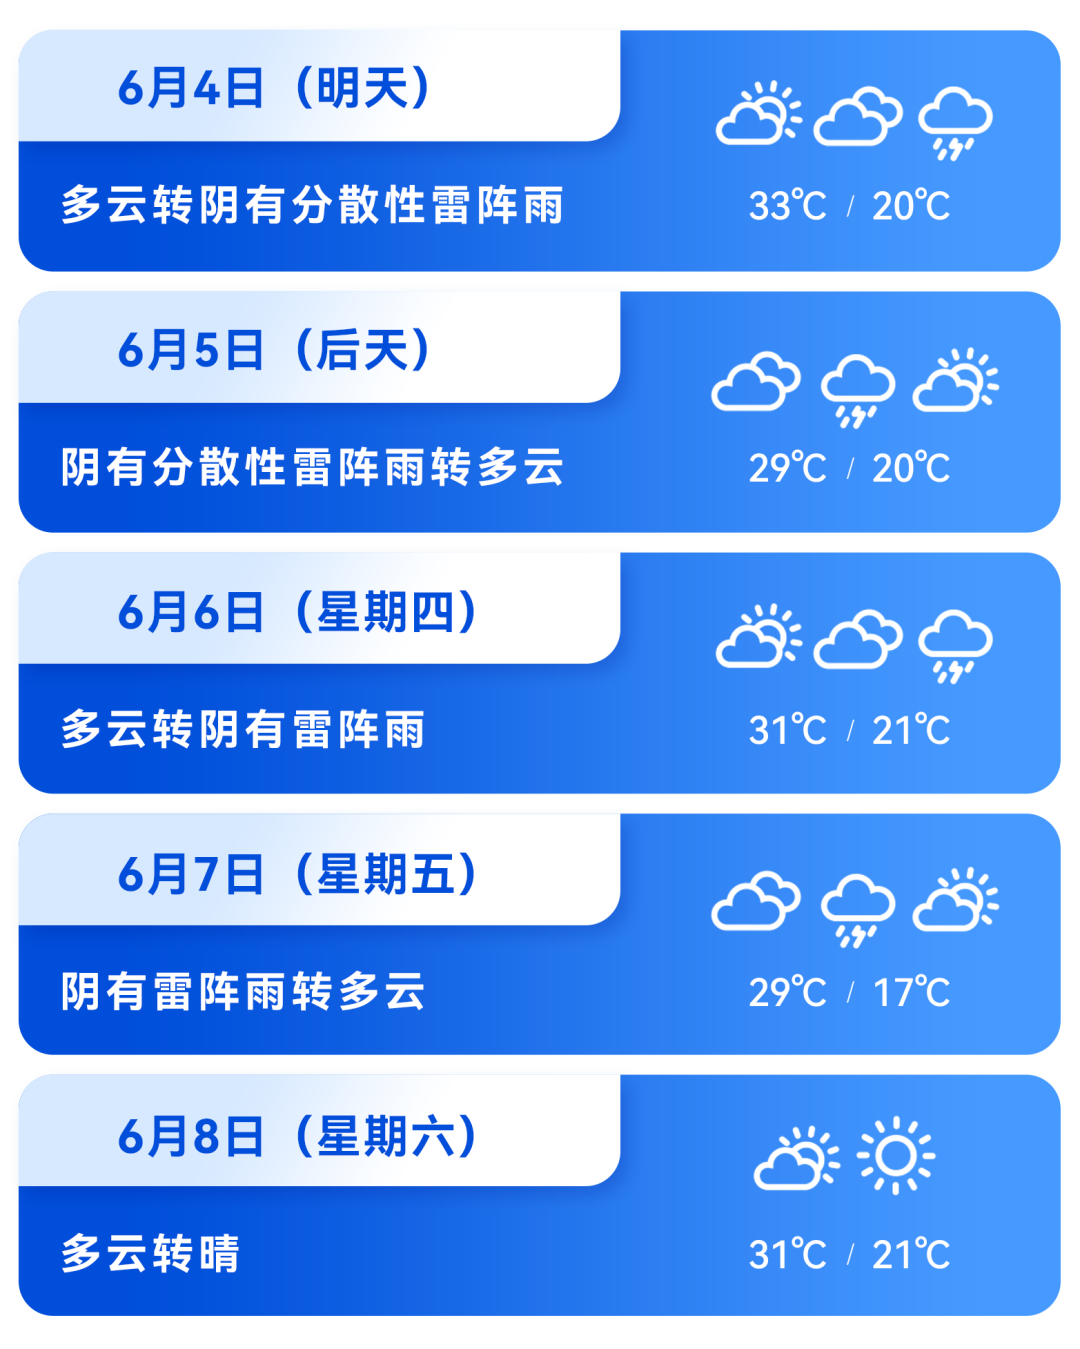 顺顺说天气丨4日最高气温33℃,将迎来降雨天气